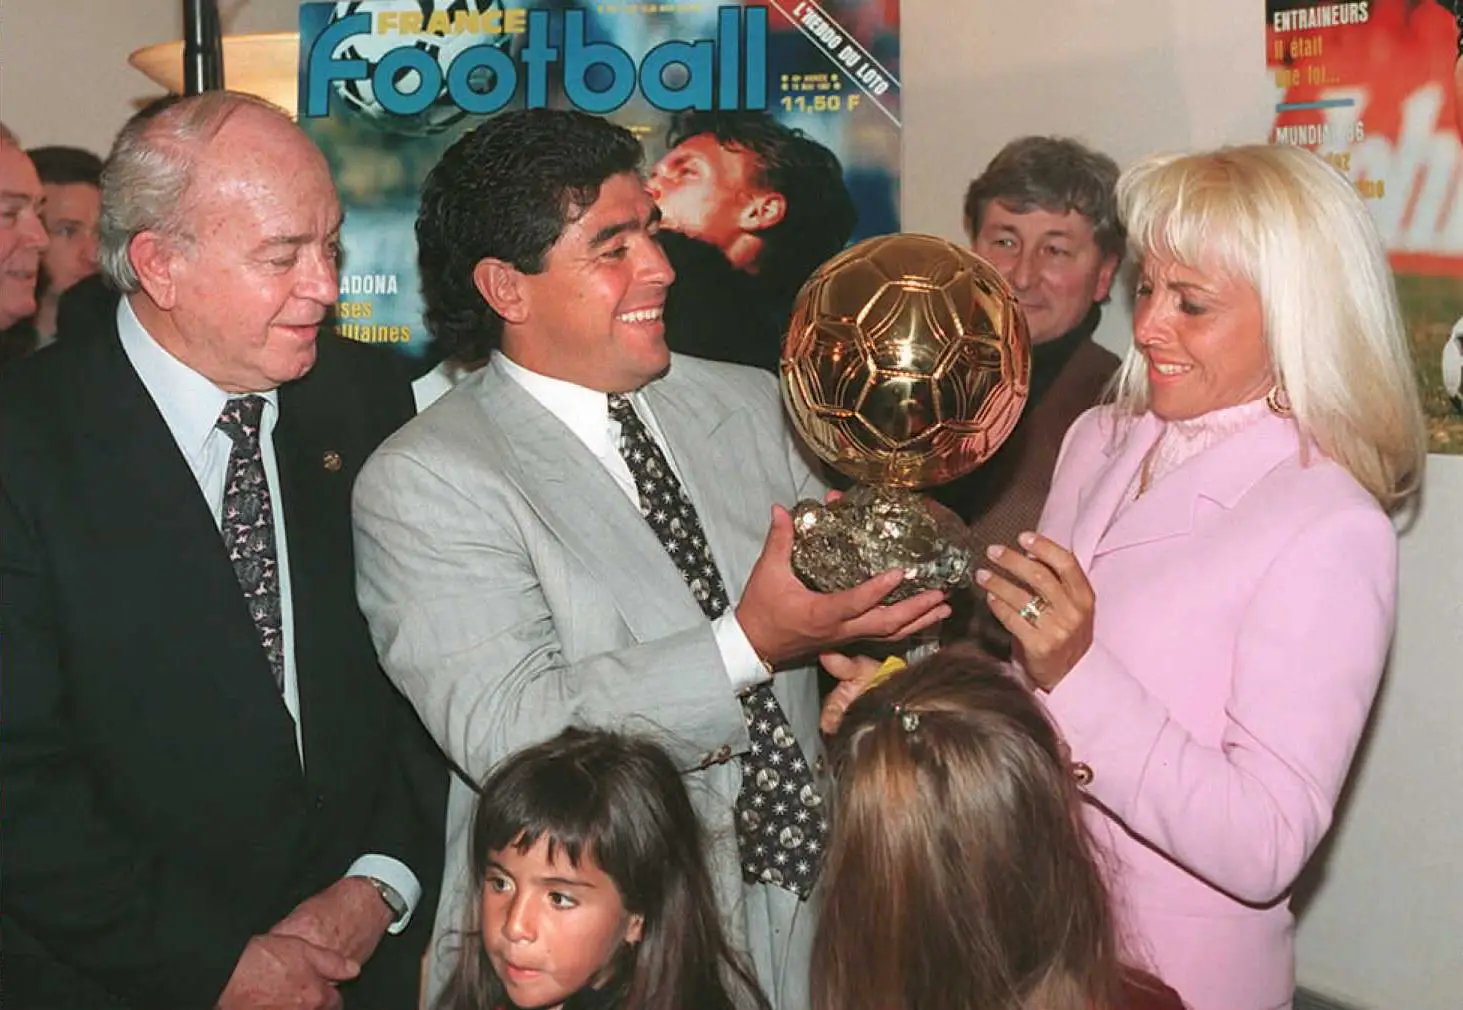 Bola de Ouro de Maradona no Mundial 1986 que andou desaparecida será leiloada em Paris